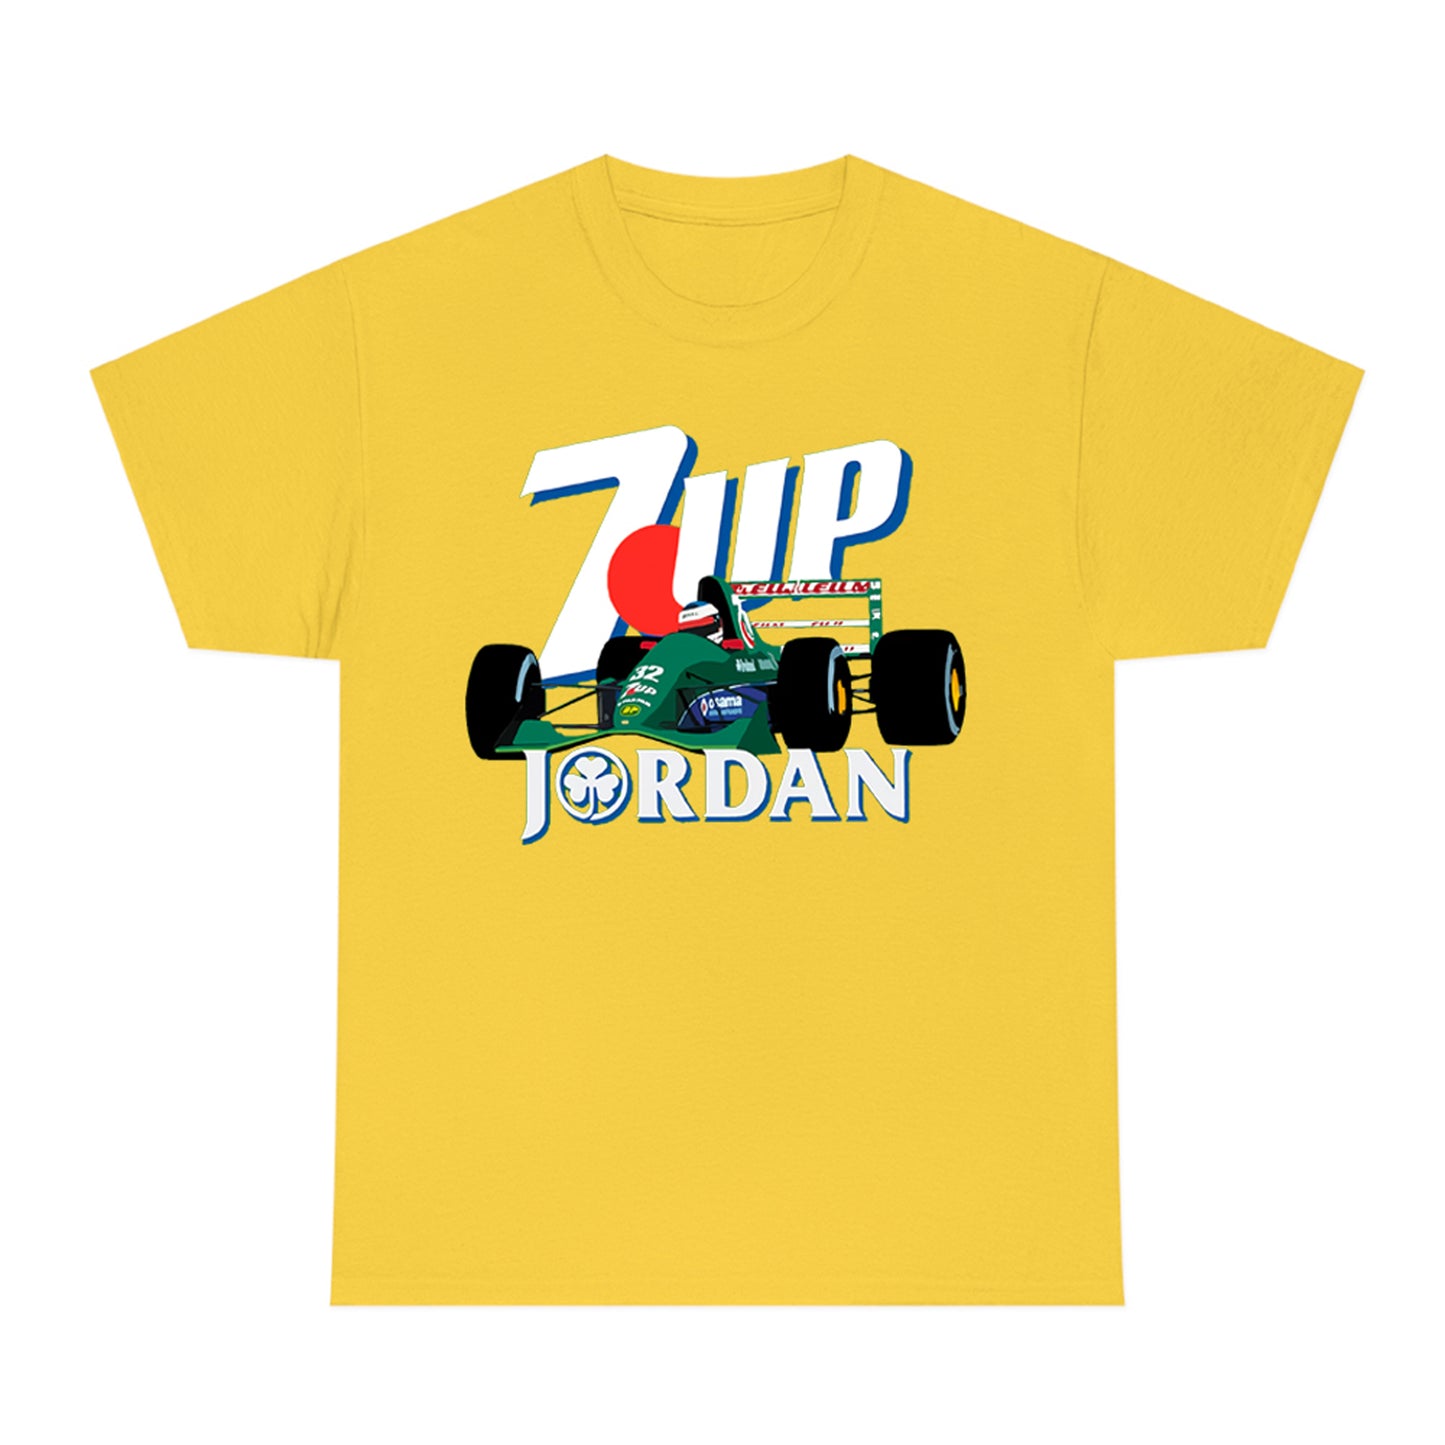 7up Jordan Racing Team Logo Yellow Green T-Shirt Size S to 3XL